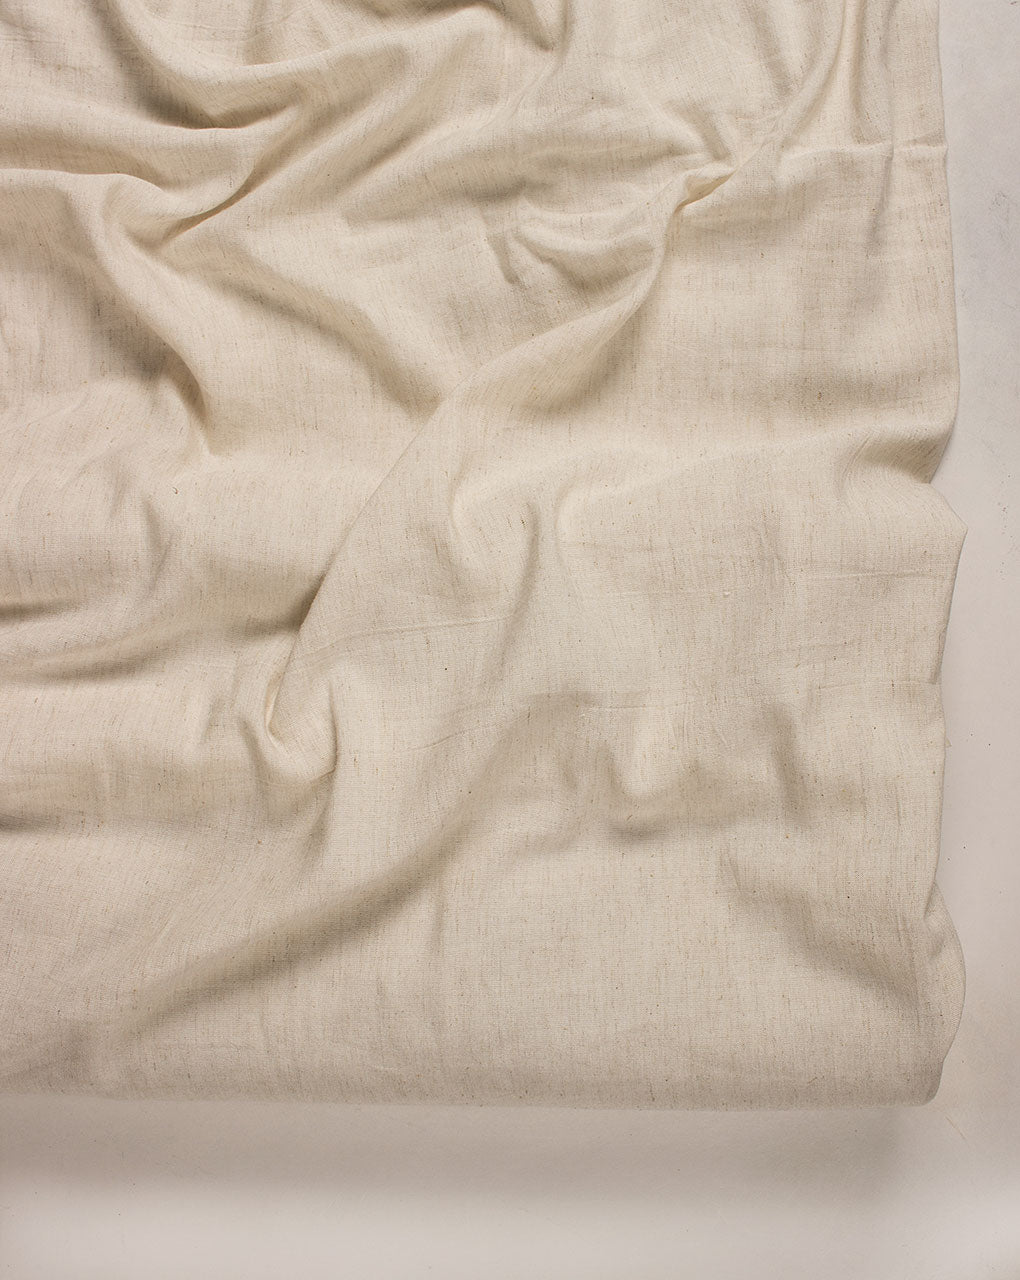 Greige 2/40s Cotton x 12s Flex Fabric